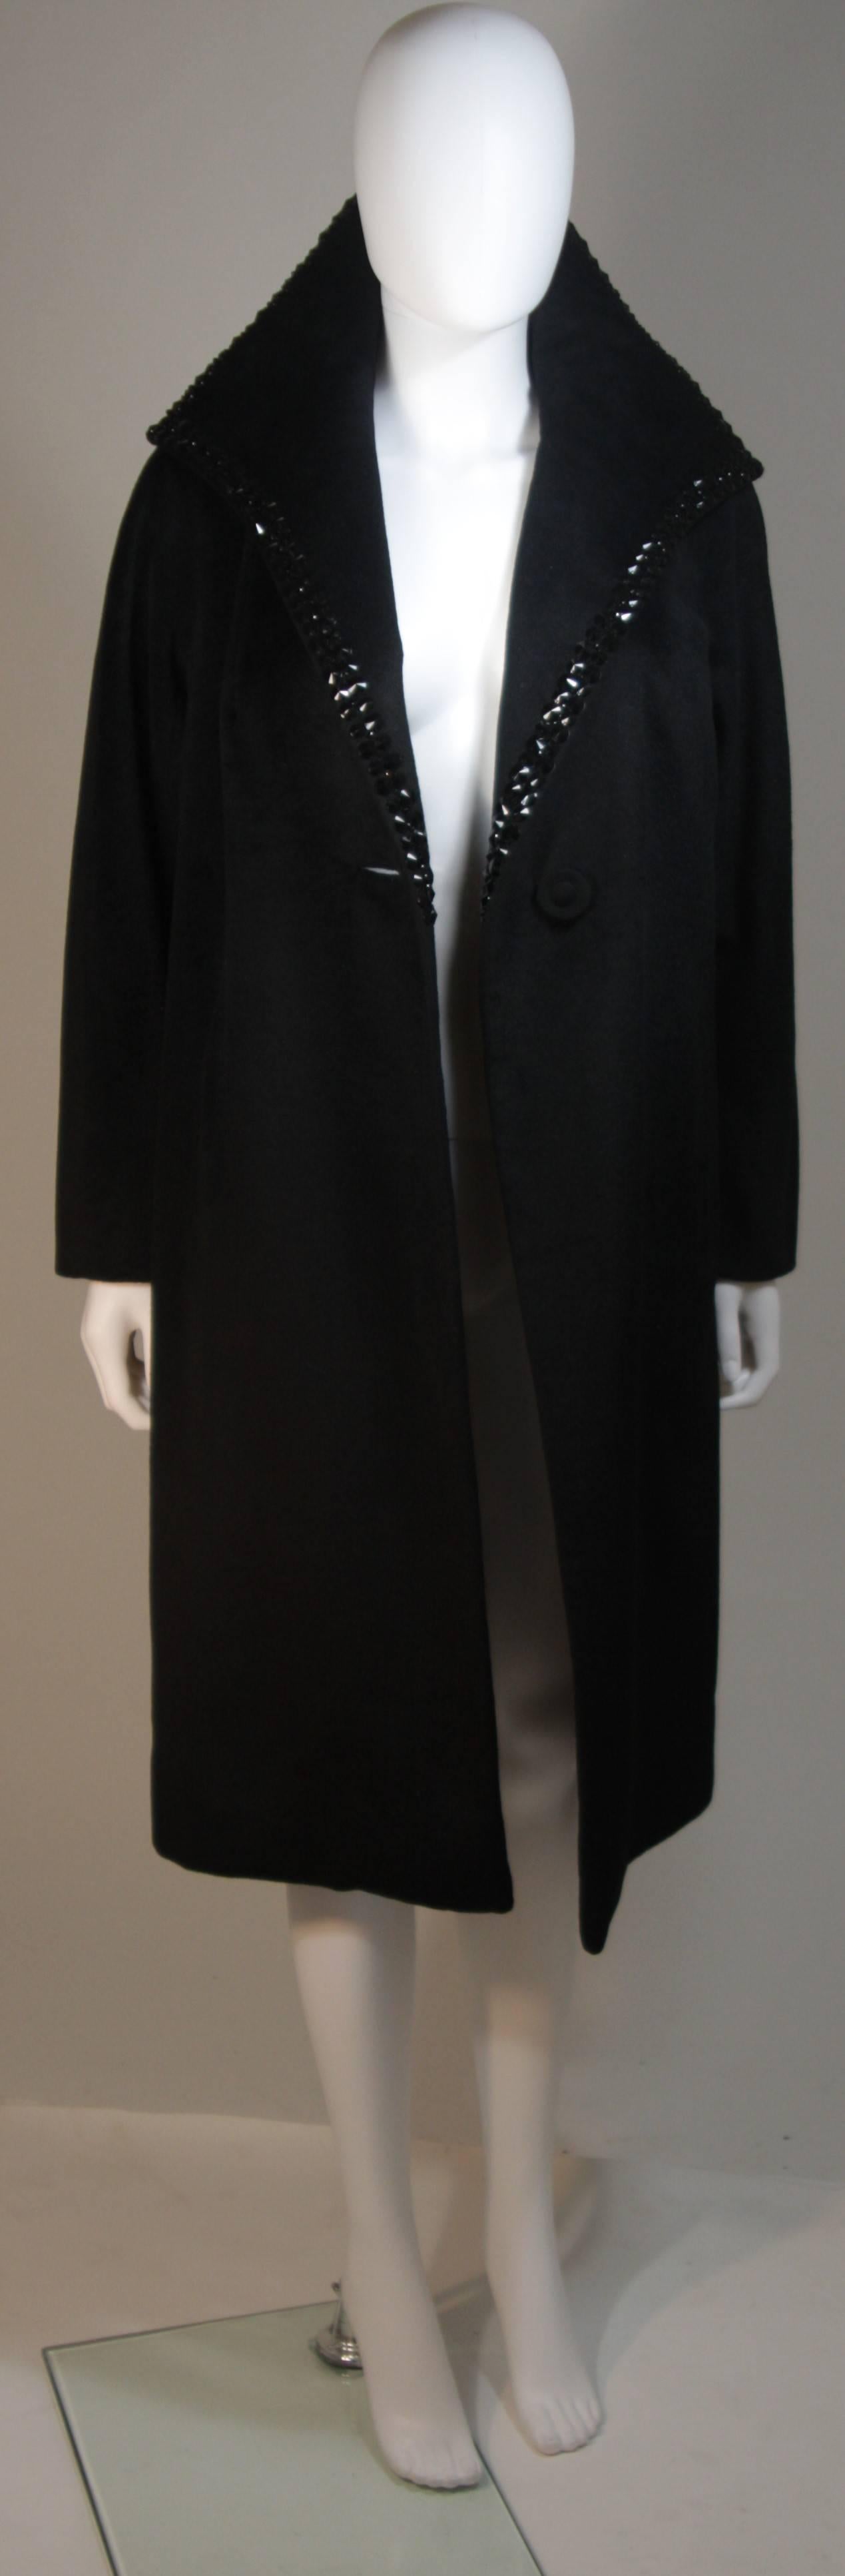 Diese McCalls Co.  der Mantel besteht aus schwarzer Wolle und hat einen großen Kragen. Der Kragen ist mit einer Nietenapplikation versehen, die von einem zeitgenössischen Designer angebracht wurde. In ausgezeichnetem Zustand. Hergestellt in